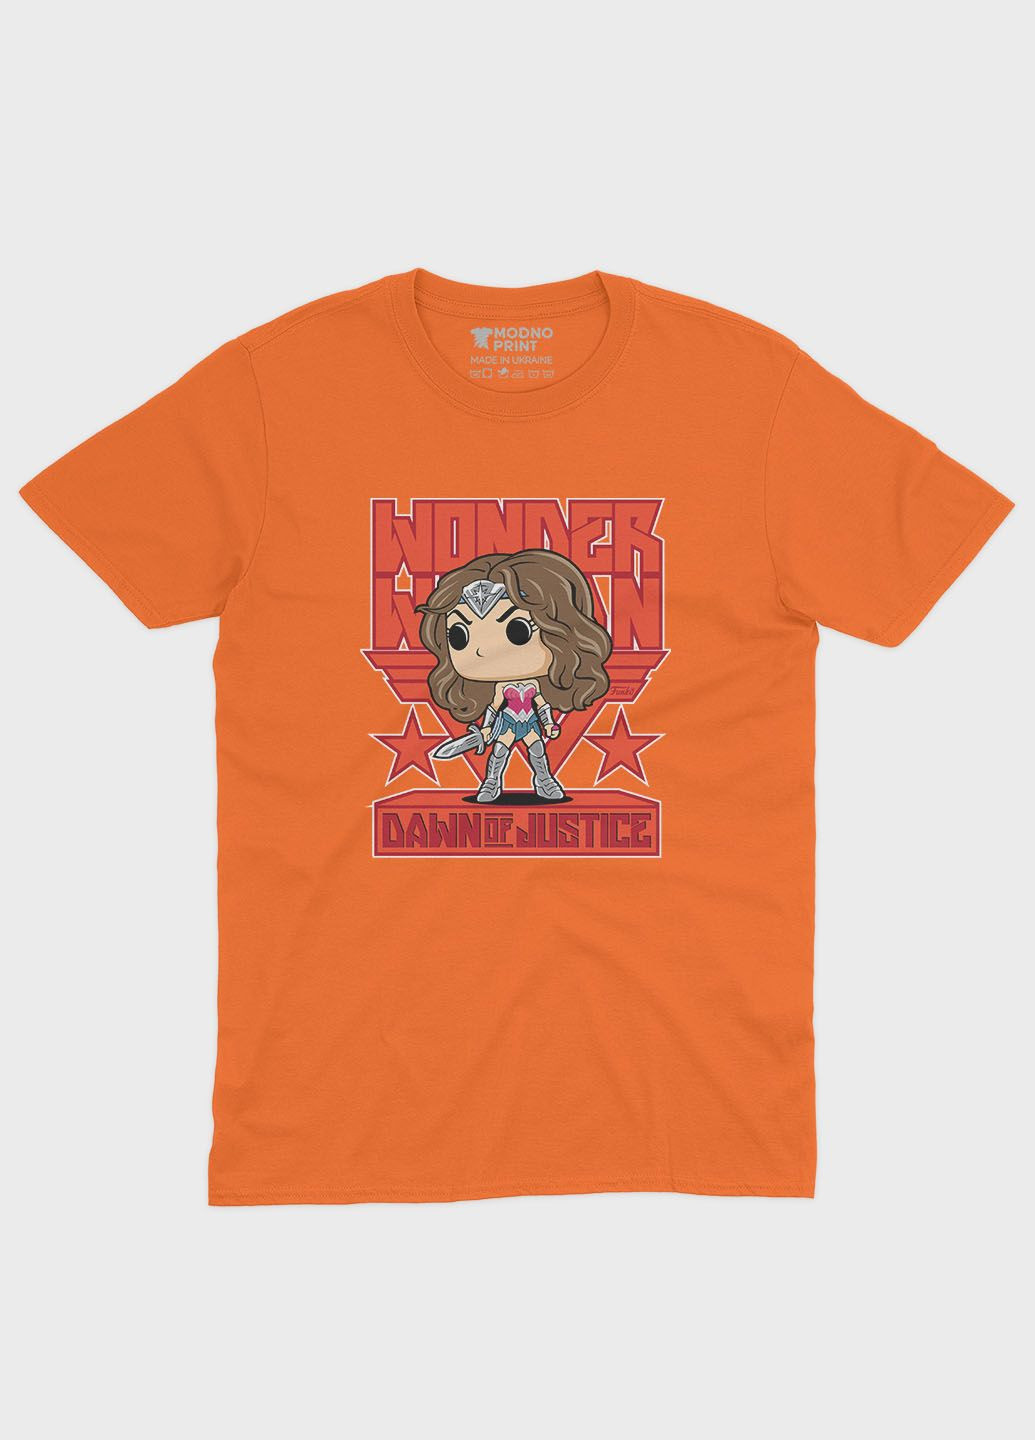 Оранжевая демисезонная футболка для мальчика с принтом супергероя - чудо-женщина (ts001-1-ora-006-006-002-b) Modno